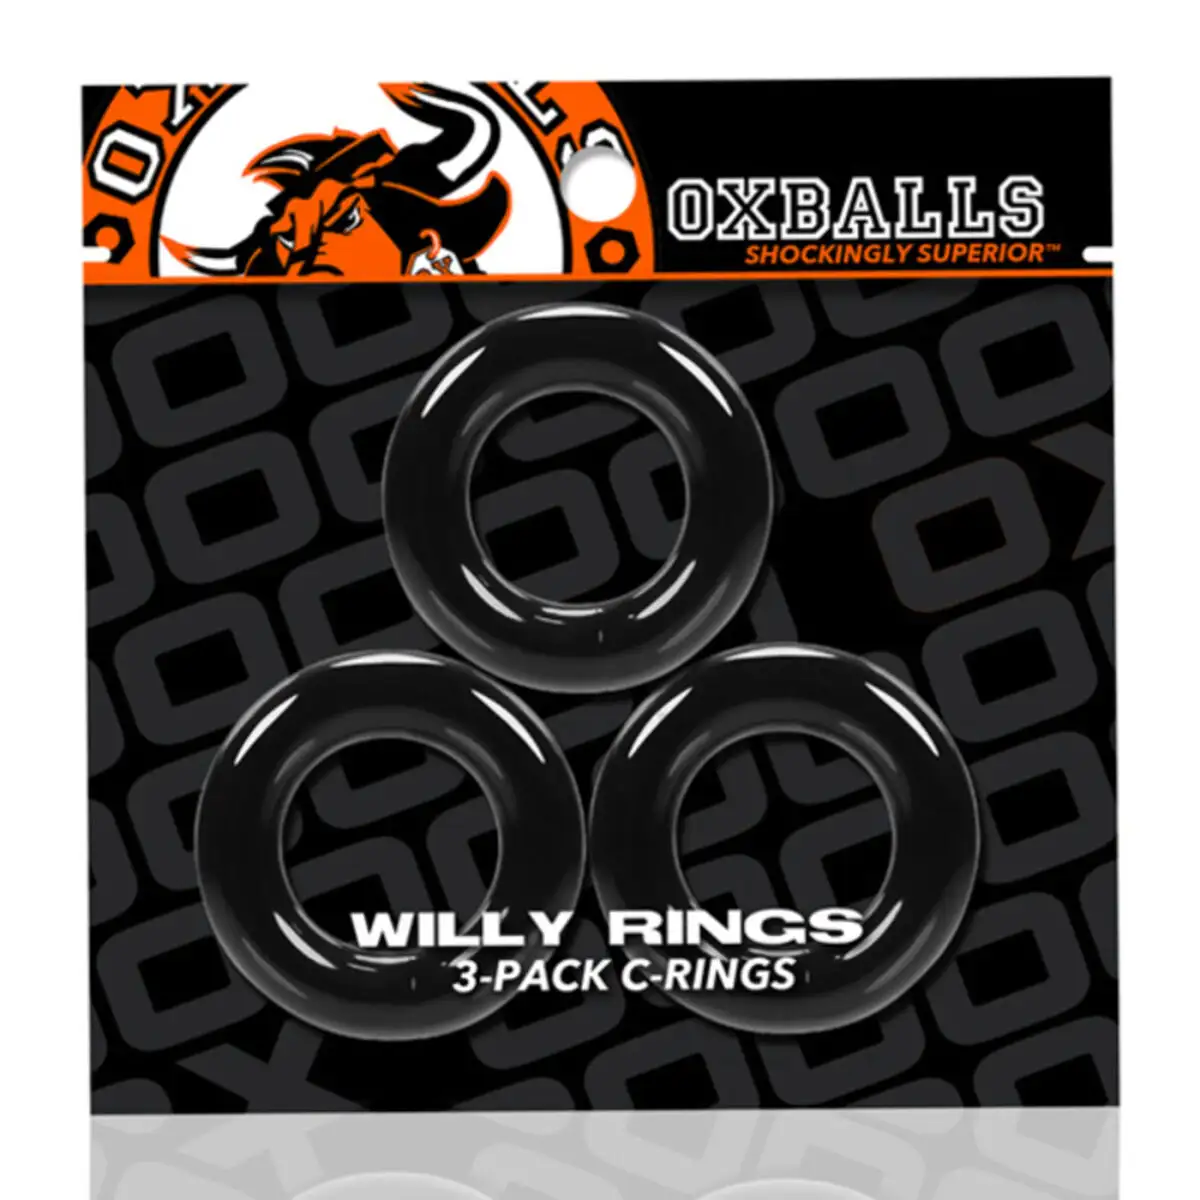 Tri bague penis oxballs willy rings pack black 3 uds _4740. Bienvenue chez DIAYTAR SENEGAL - Où Choisir est un Voyage. Plongez dans notre plateforme en ligne pour trouver des produits qui ajoutent de la couleur et de la texture à votre quotidien.